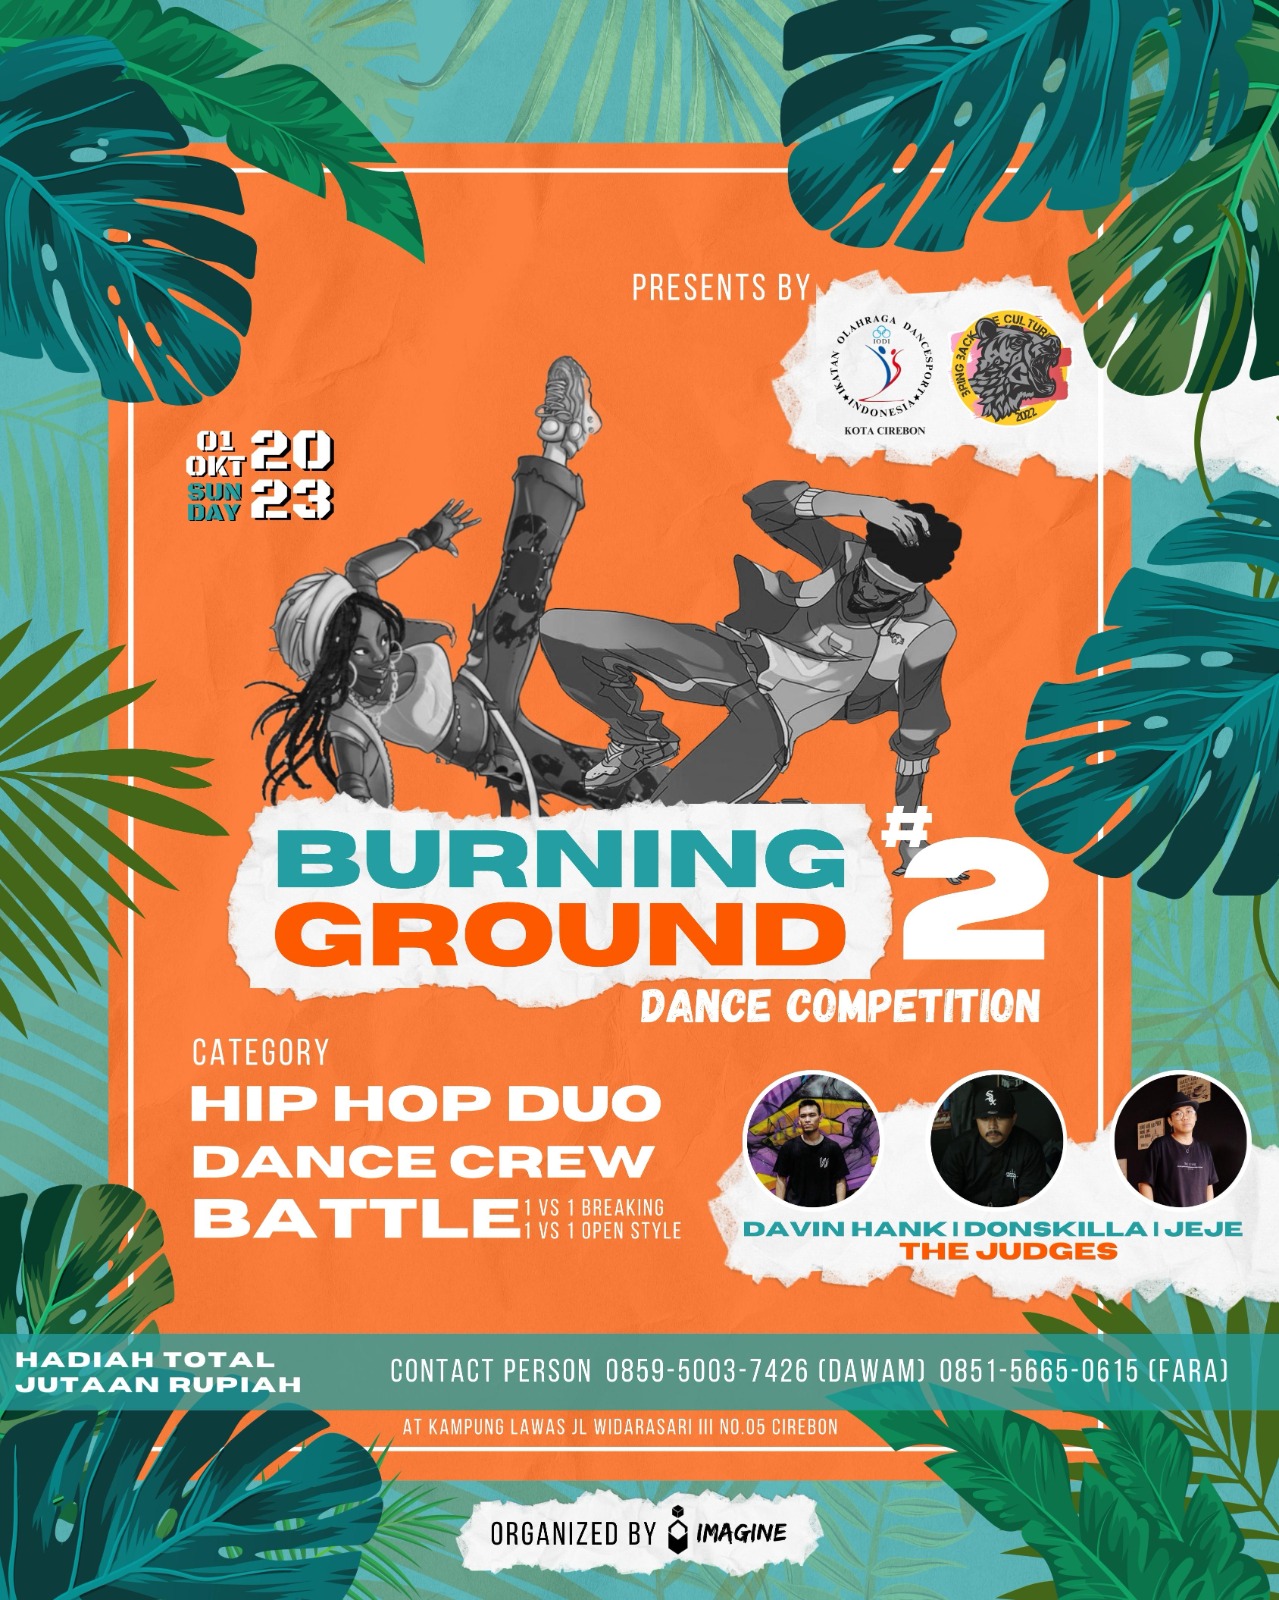 IODI Kota Cirebon dan BBTC Gelar Dance Competition Burning Ground 2, Pendaftaran Sudah Dibuka